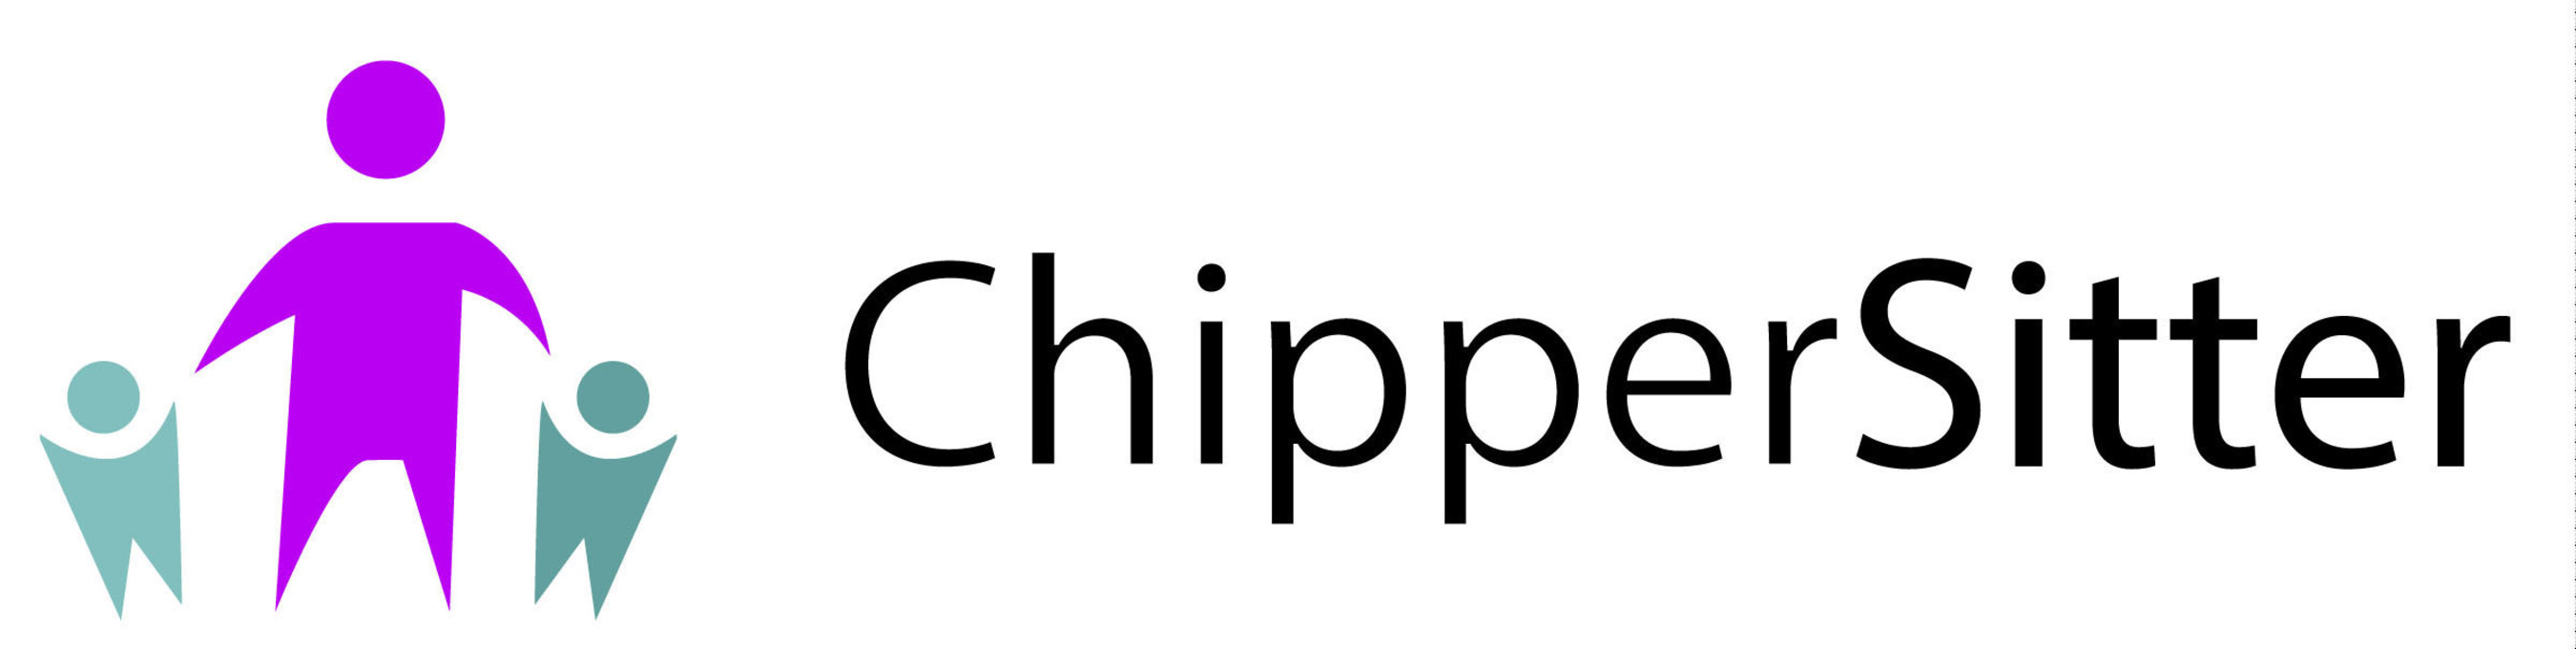 ChipperSitter